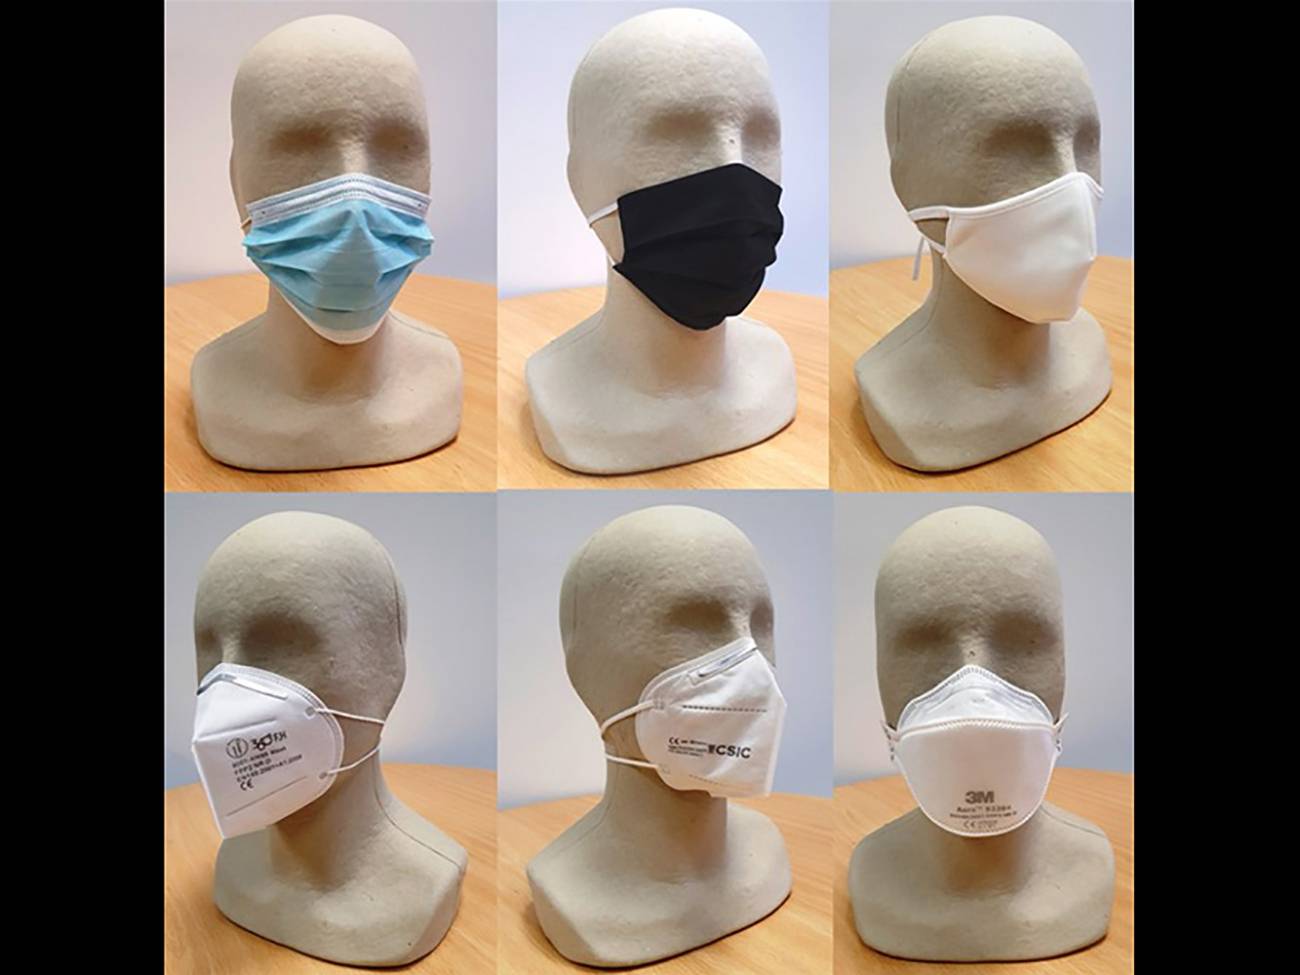 El estudio analiza mascarillas quirúrgicas, de tela, FFP2, KN95 y FFP3 / Foto: SINC